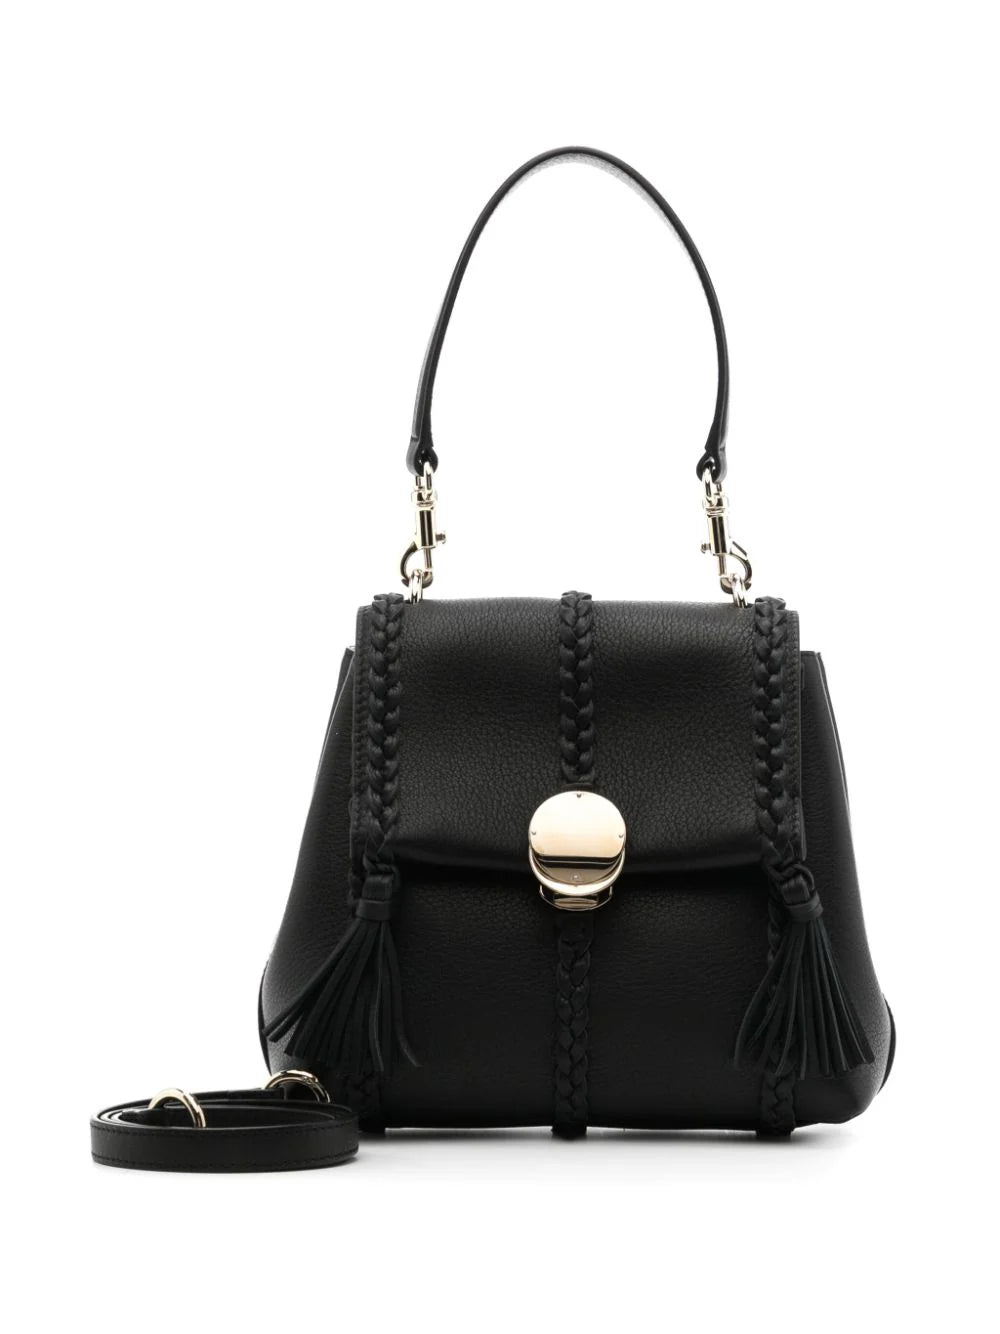 Penelope Small Soft Shoulder Bag in Black